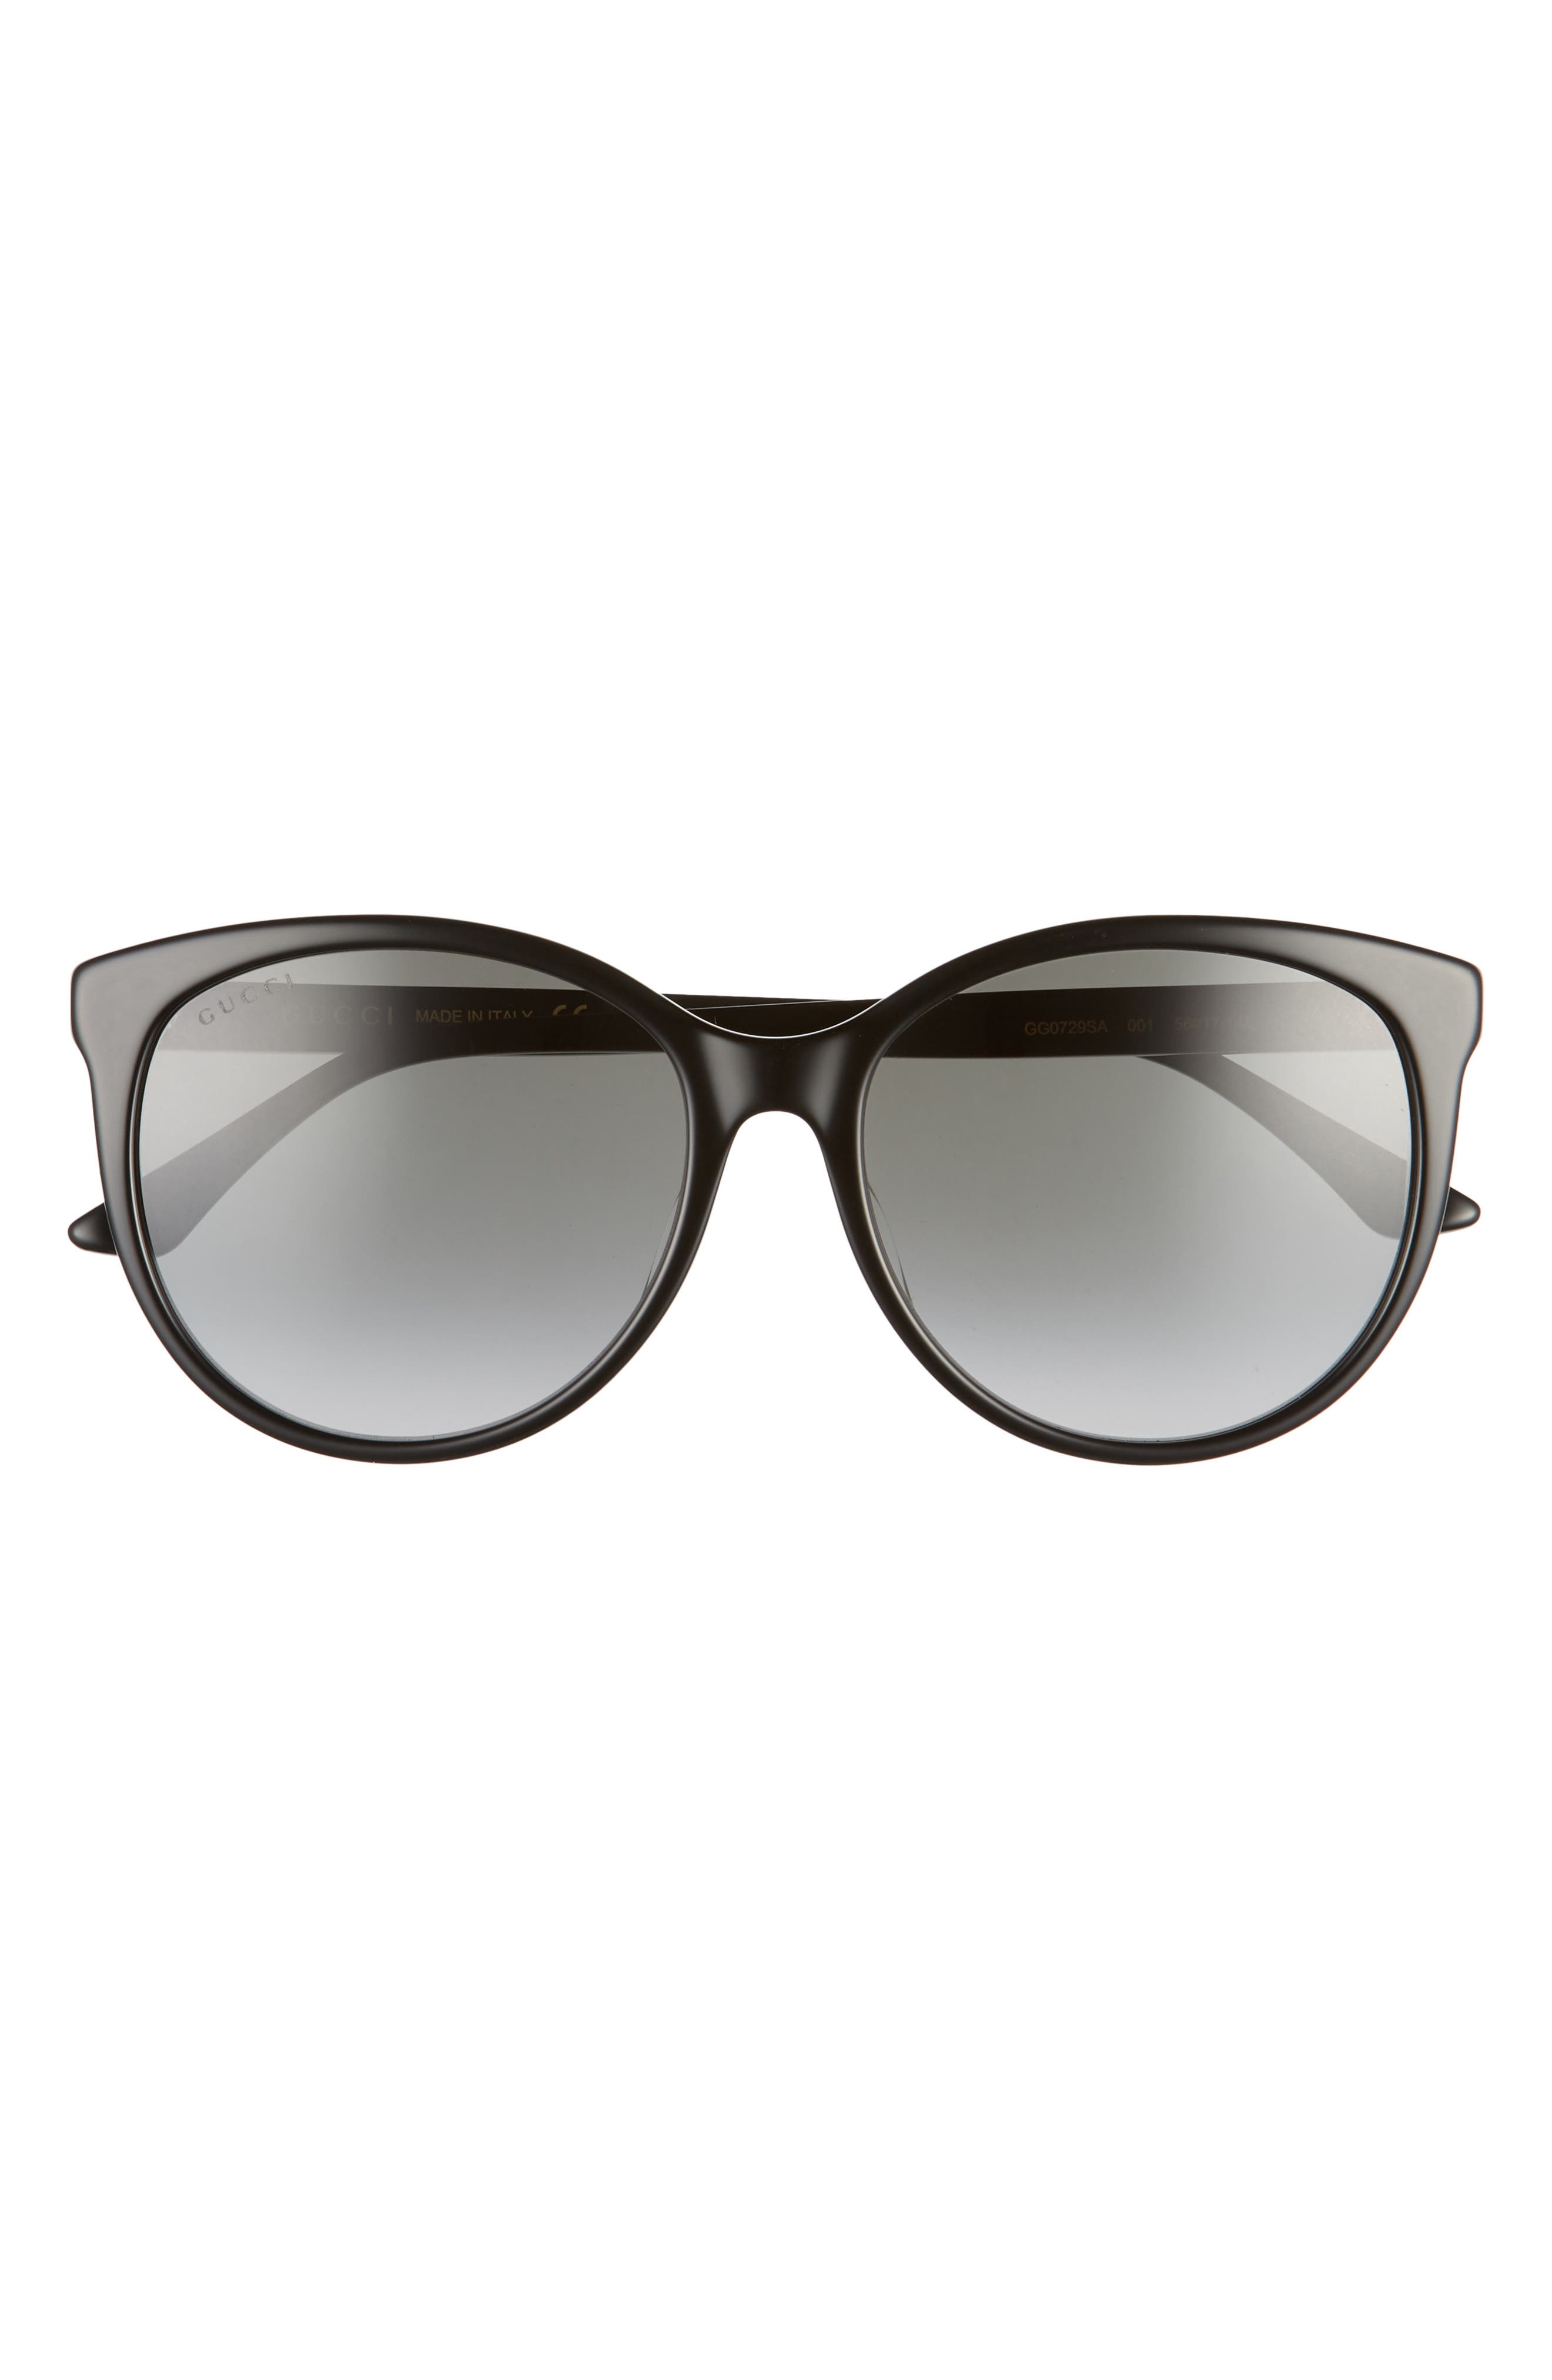 gucci sunglasses price list